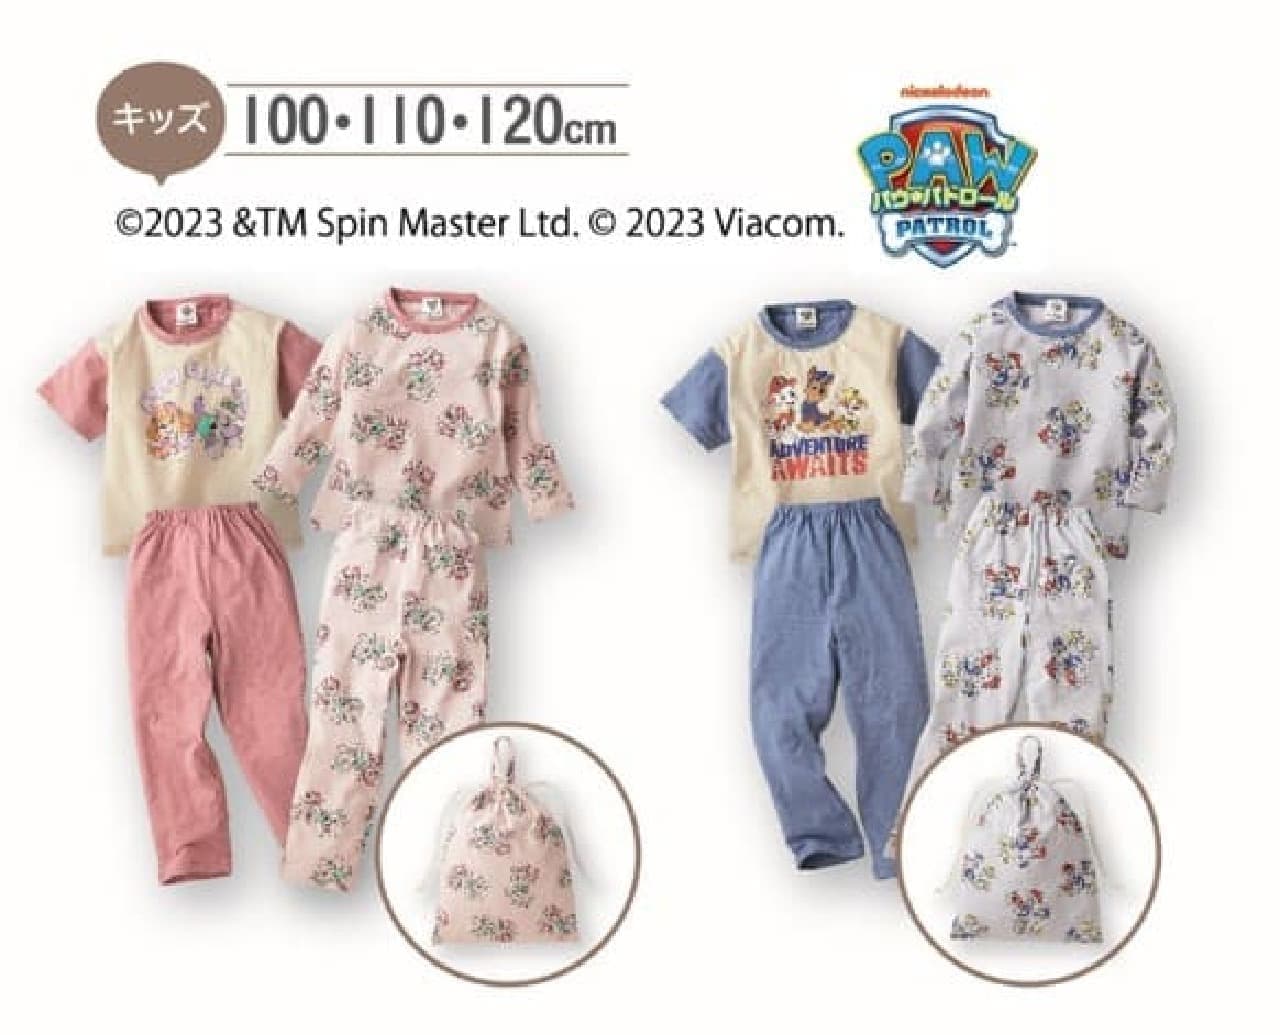 Various pajama sets